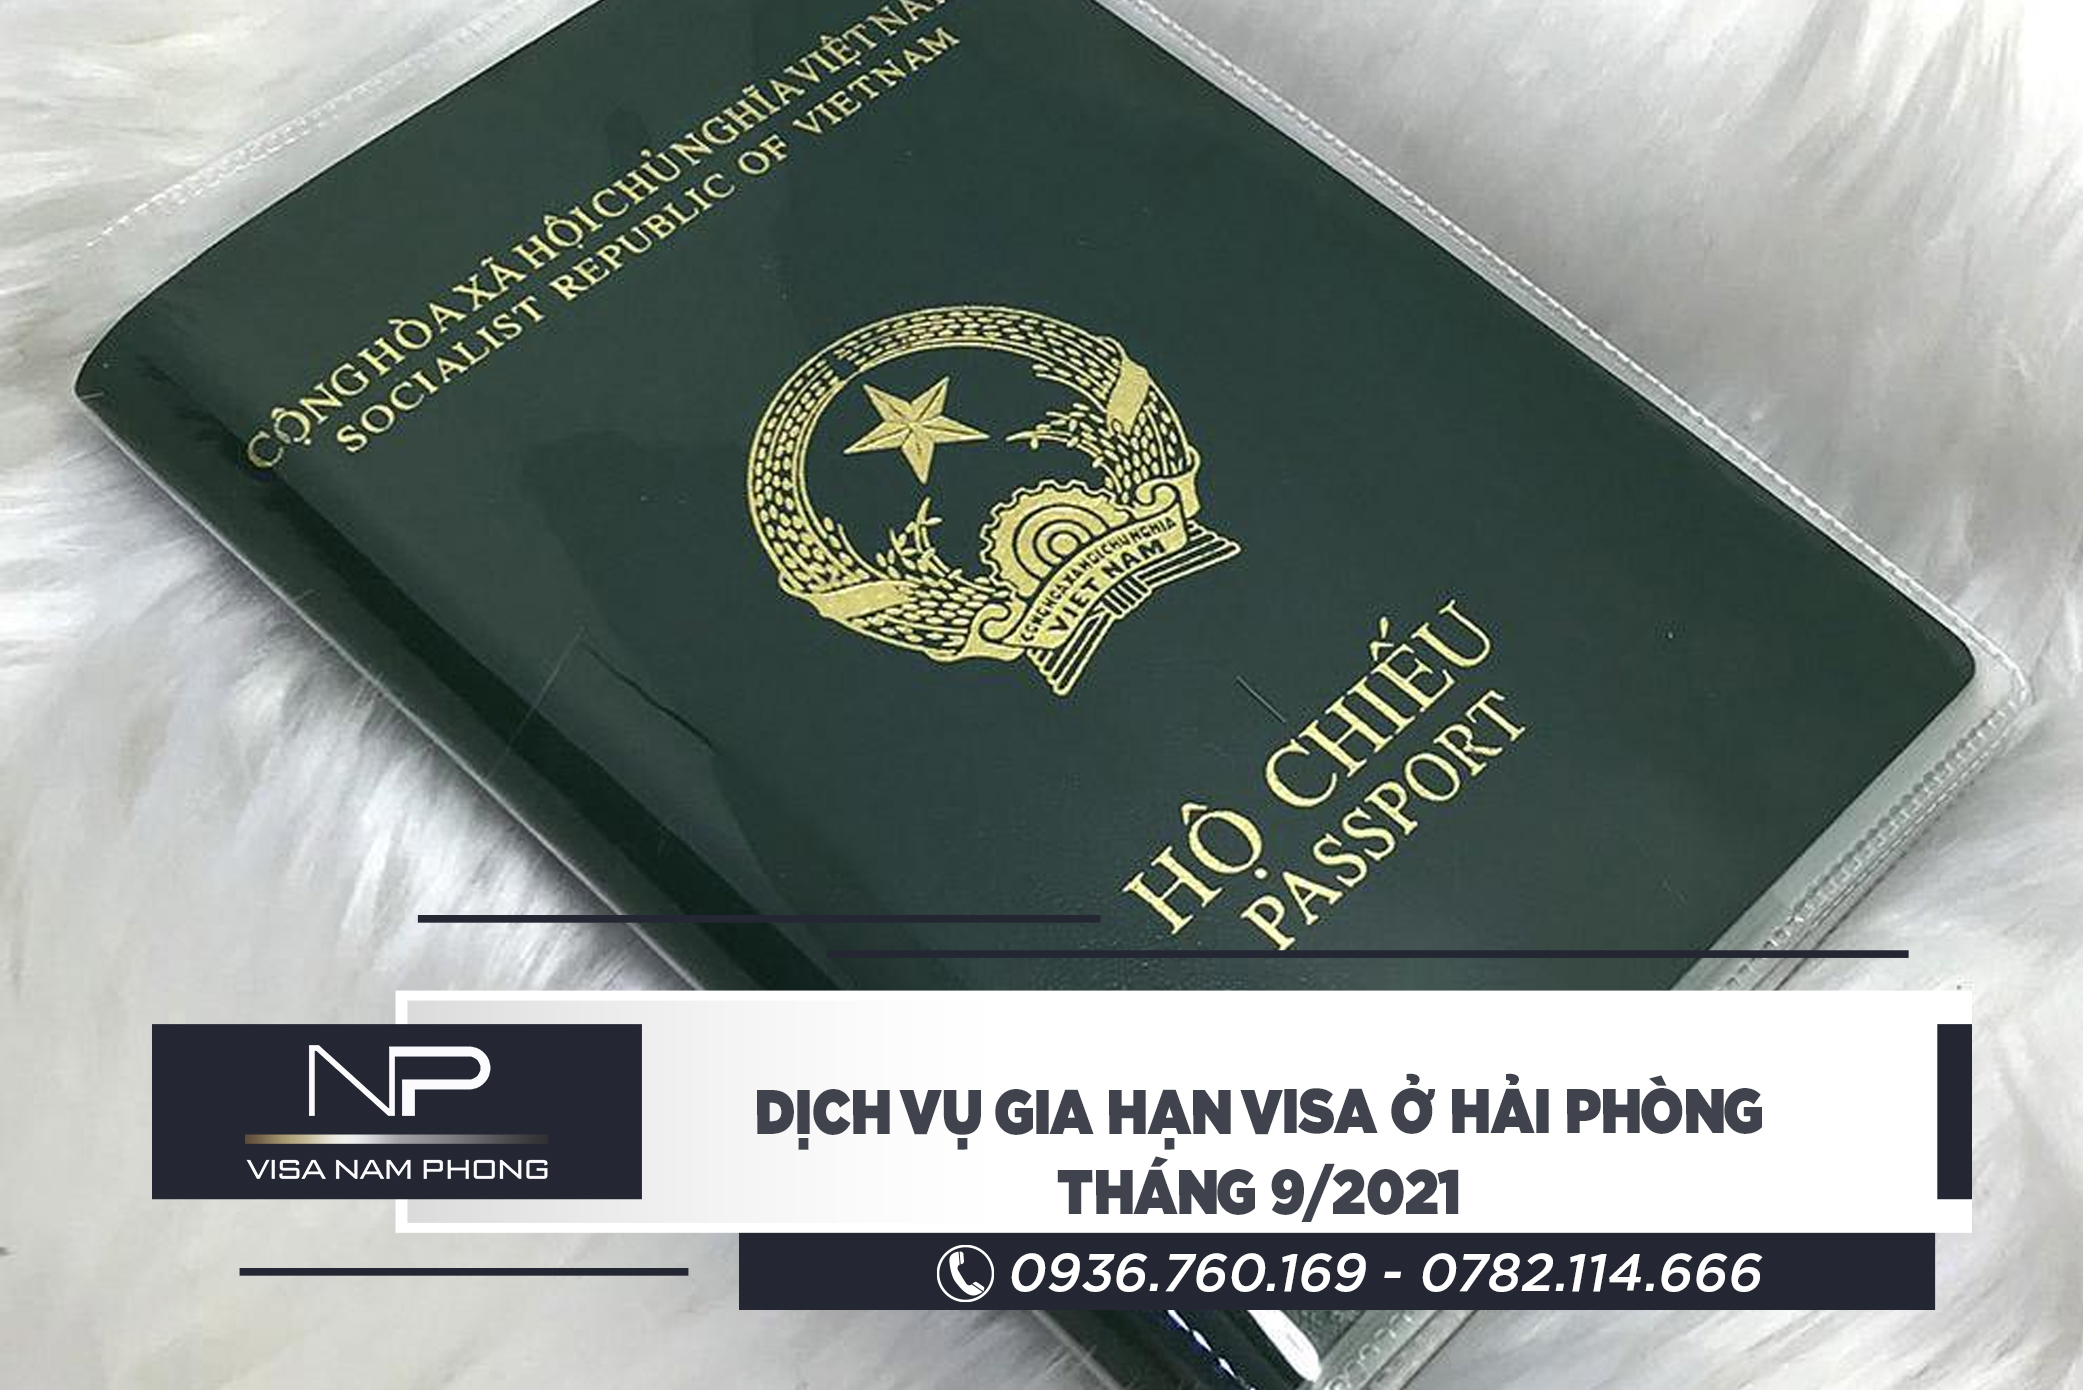 Dịch vụ gia hạn visa ở Hải Phòng tháng 9/2021	